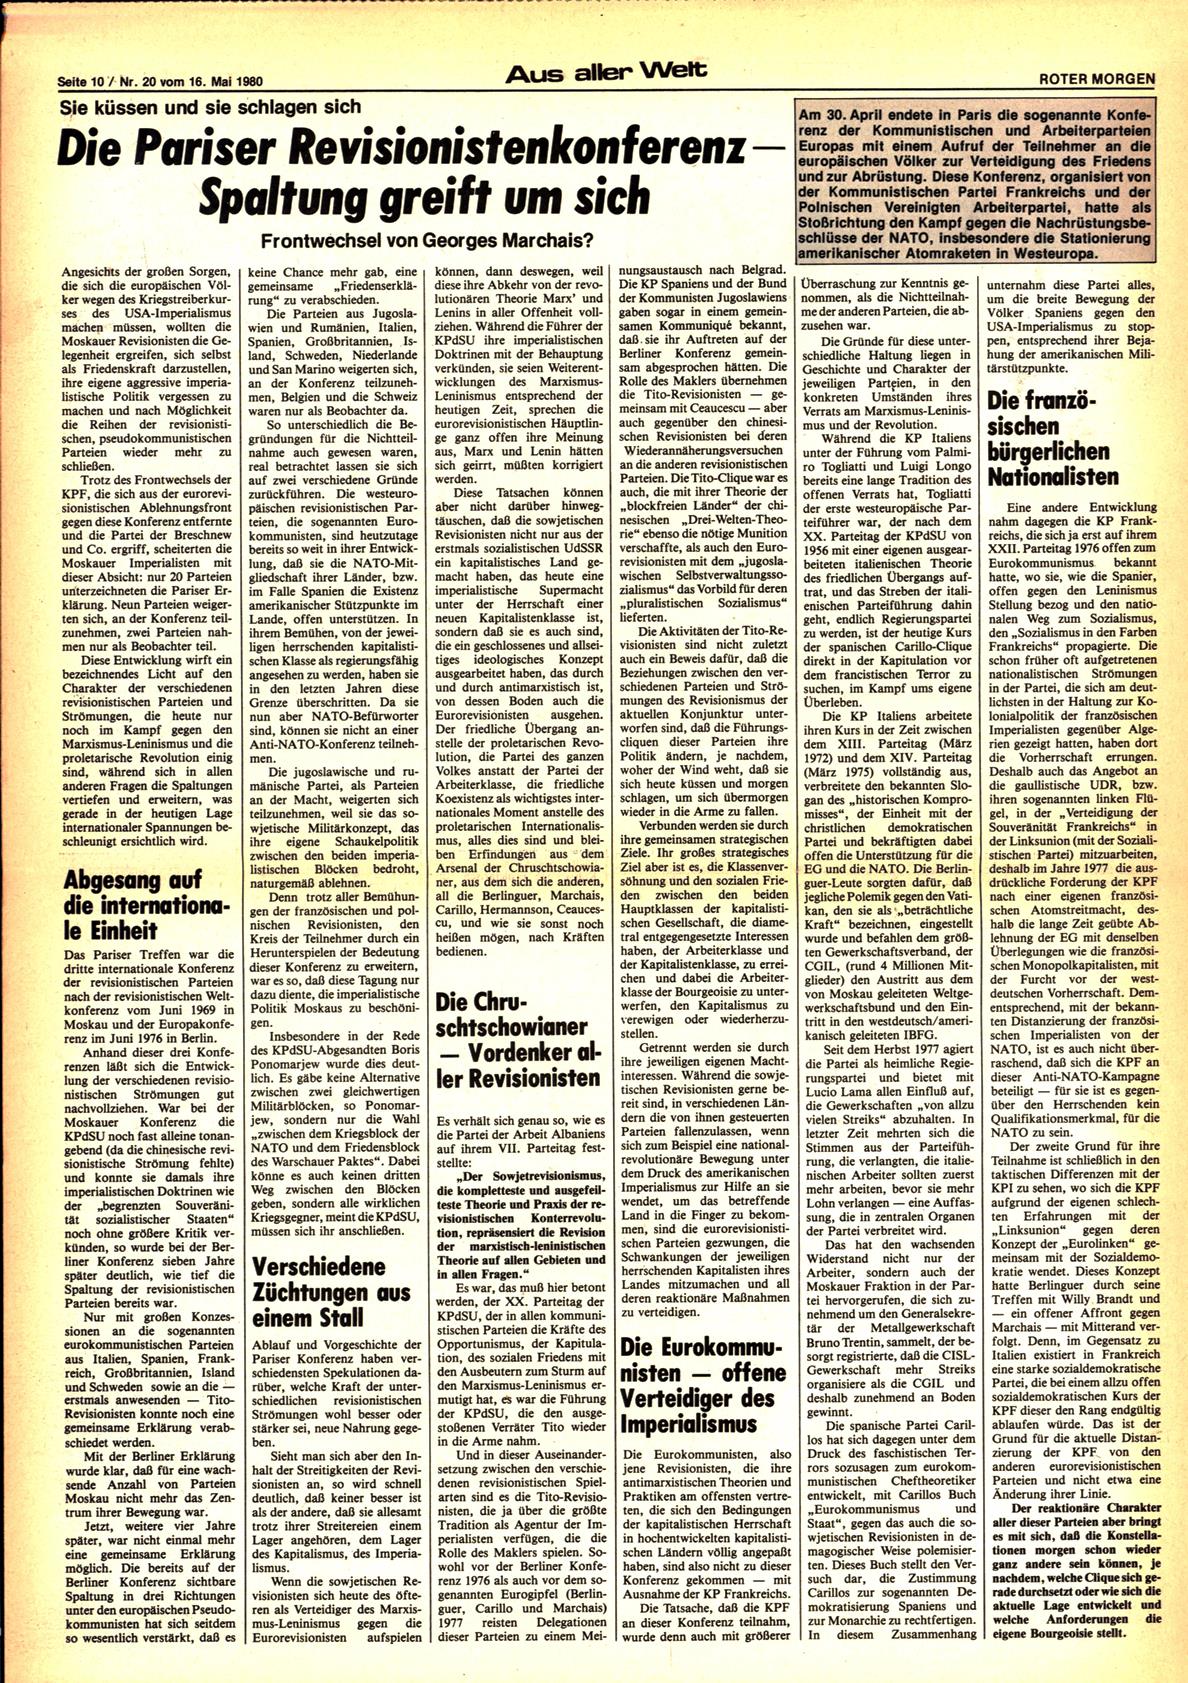 Roter Morgen, 14. Jg., 16. Mai 1980, Nr. 20, Seite 10